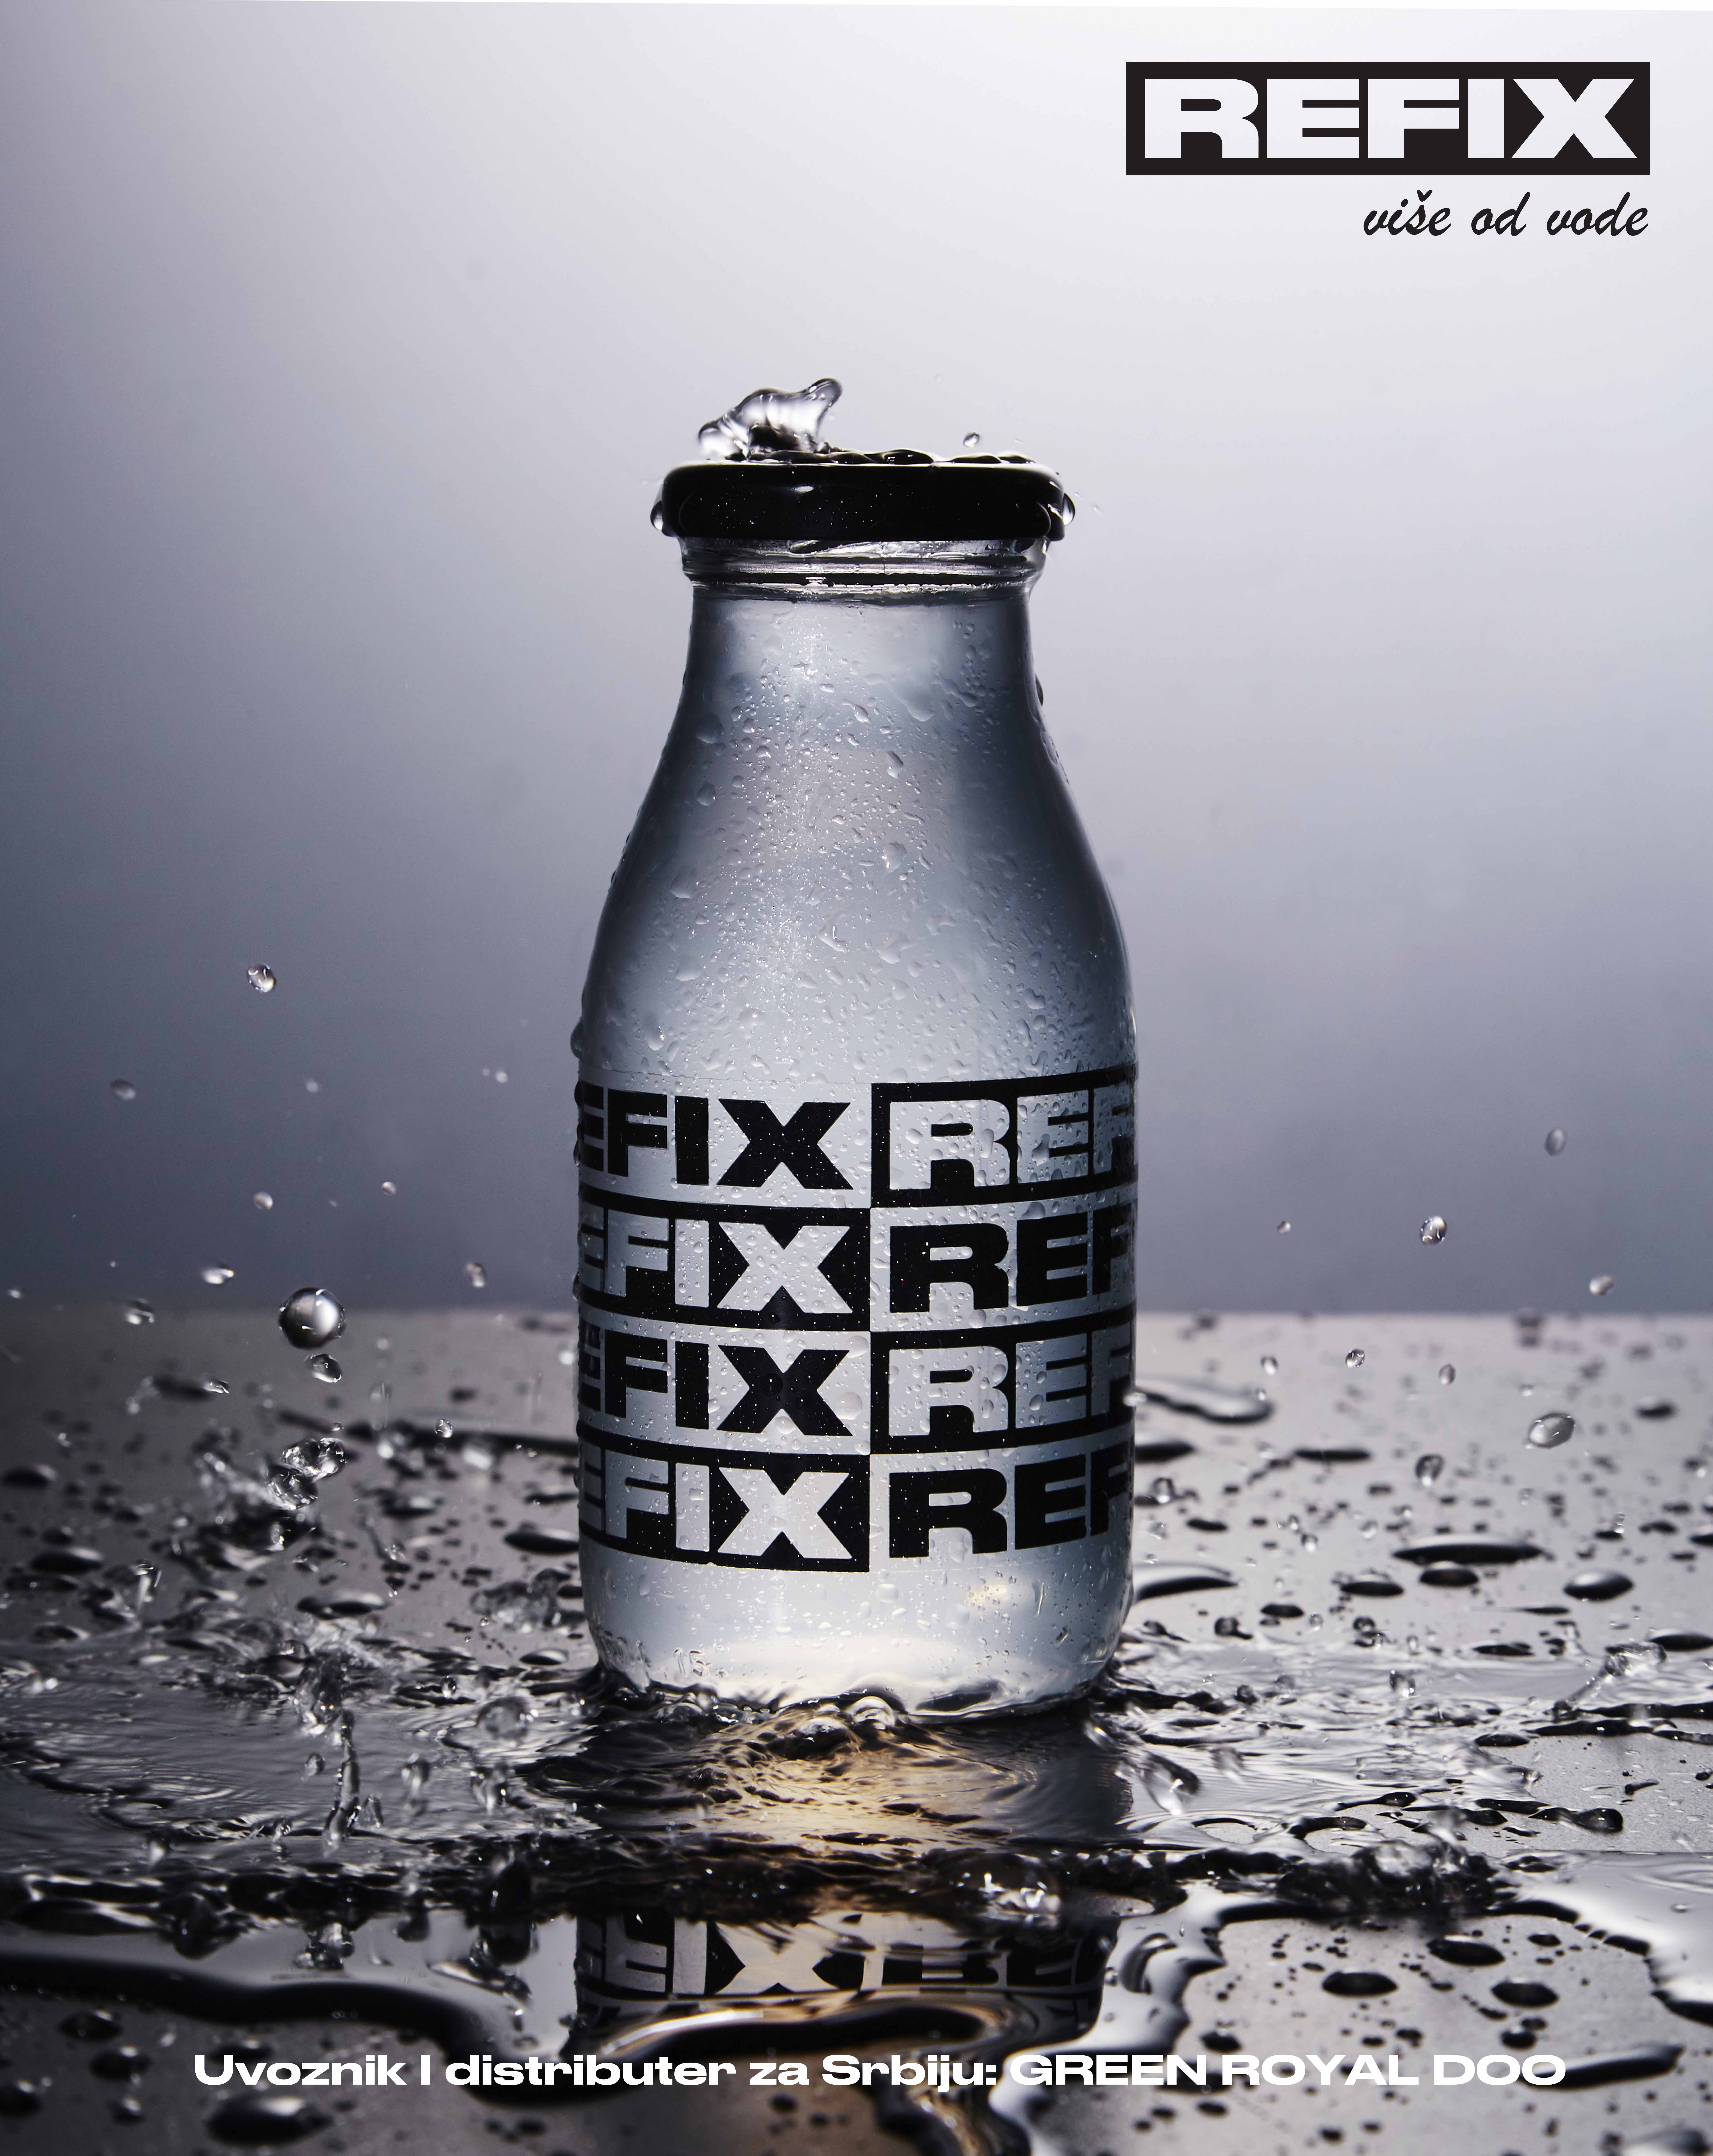 Refix – više od vode